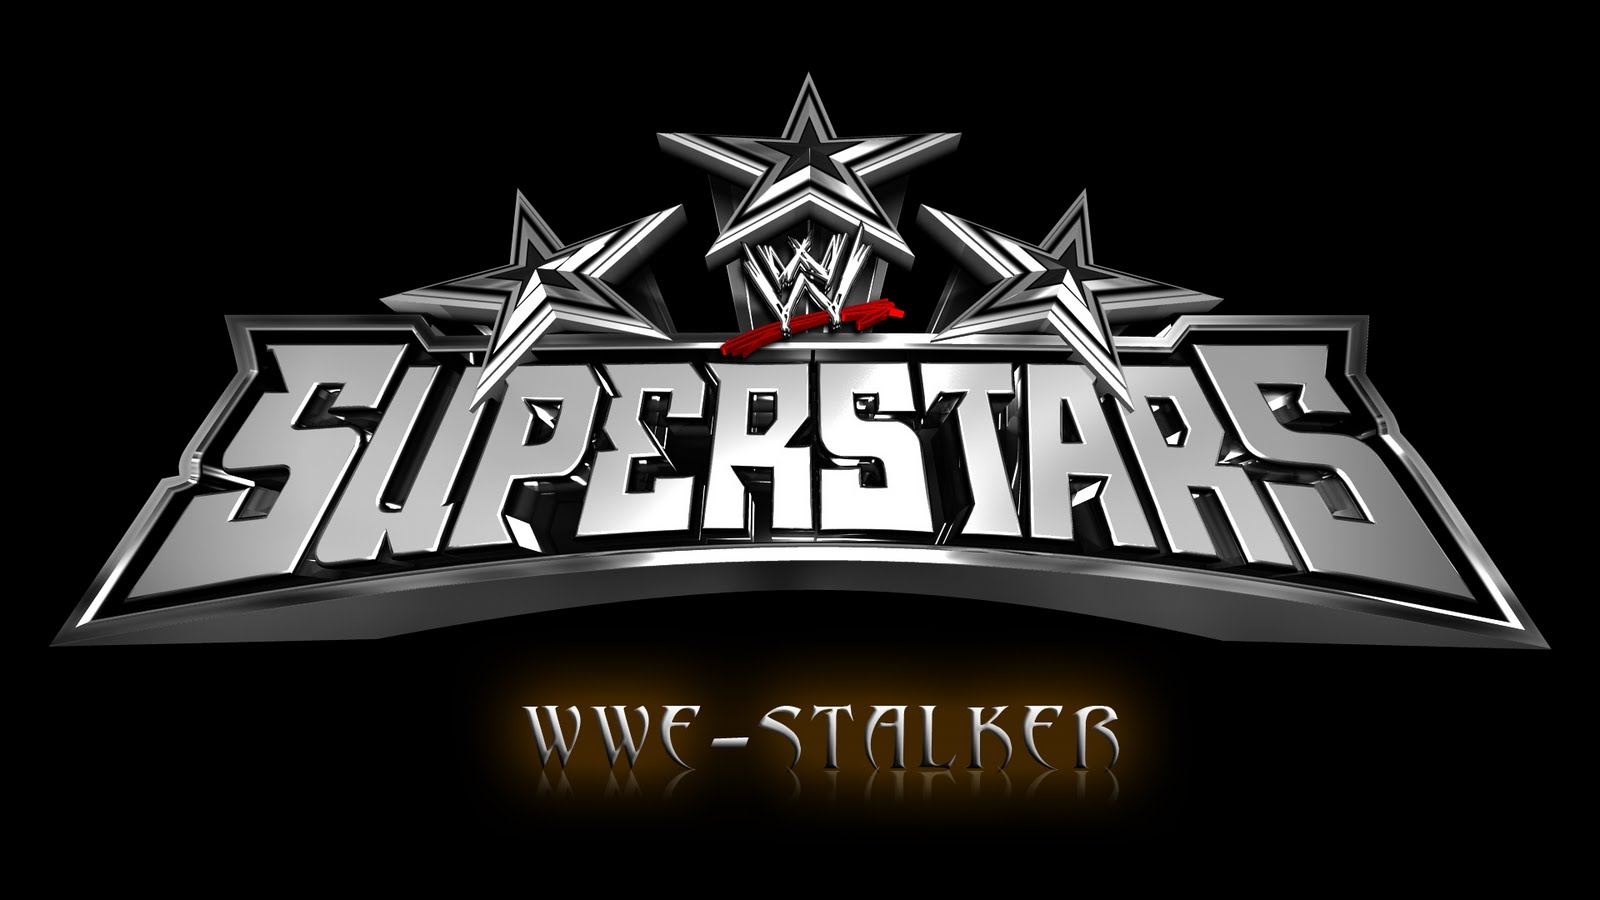 http://4.bp.blogspot.com/-3nZEXXDez50/Tt9pH6ZPvRI/AAAAAAAAAo0/FctqX6Hb7M4/s1600/WWE+Superstars.jpg